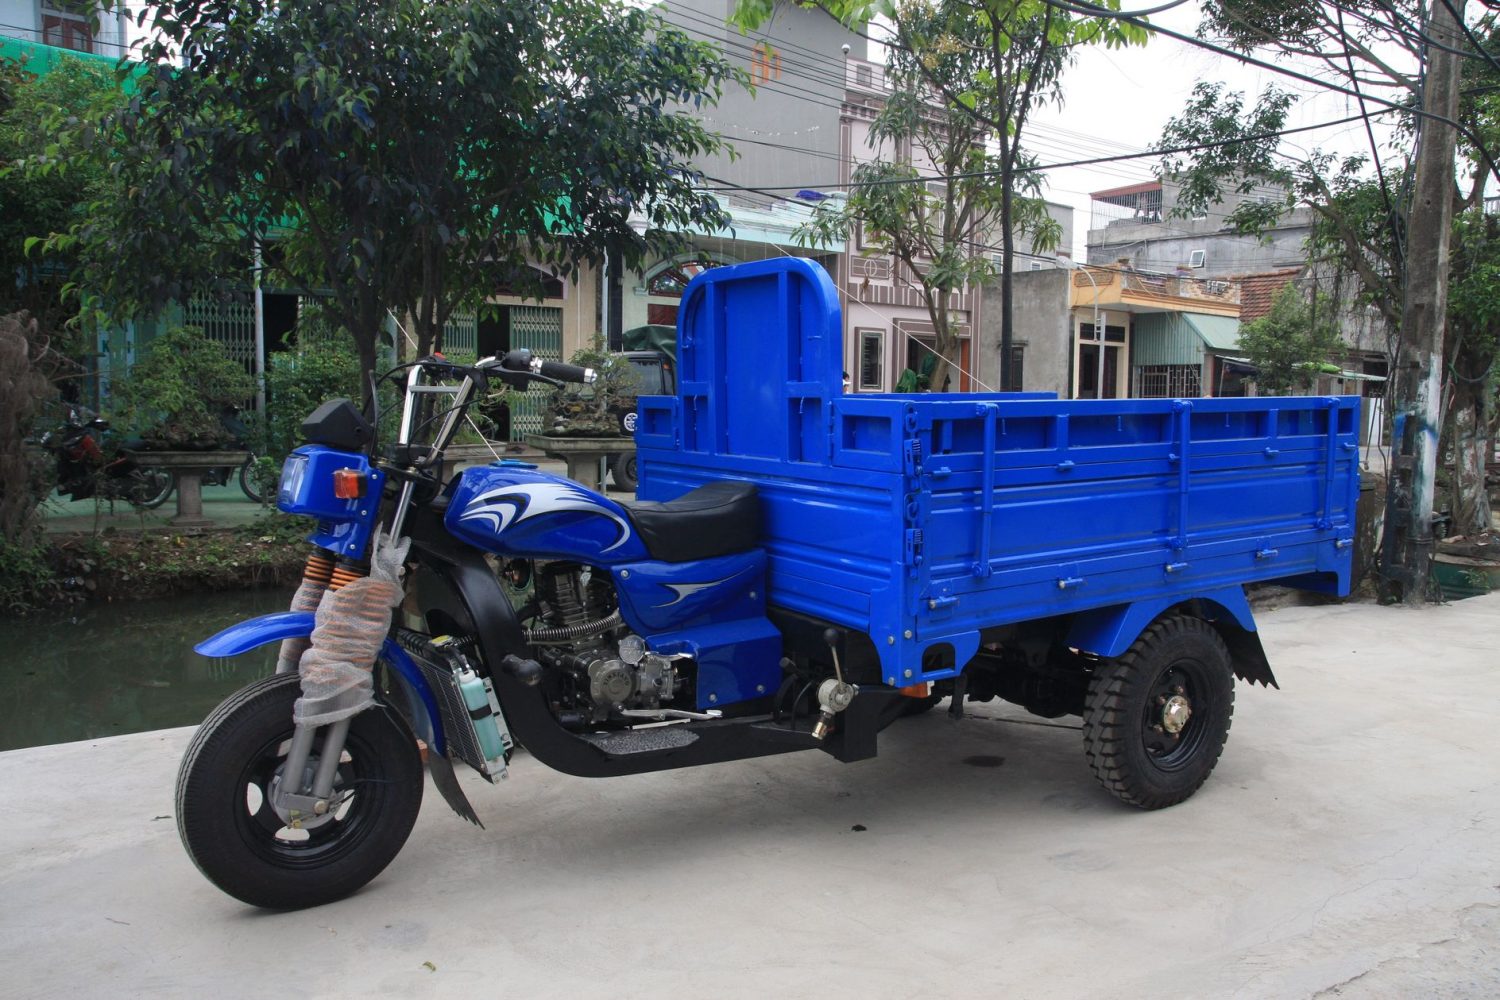  Chuyên cung cấp dịch xe ba gác chở thuê giá rẻ tại quận Tân Bình